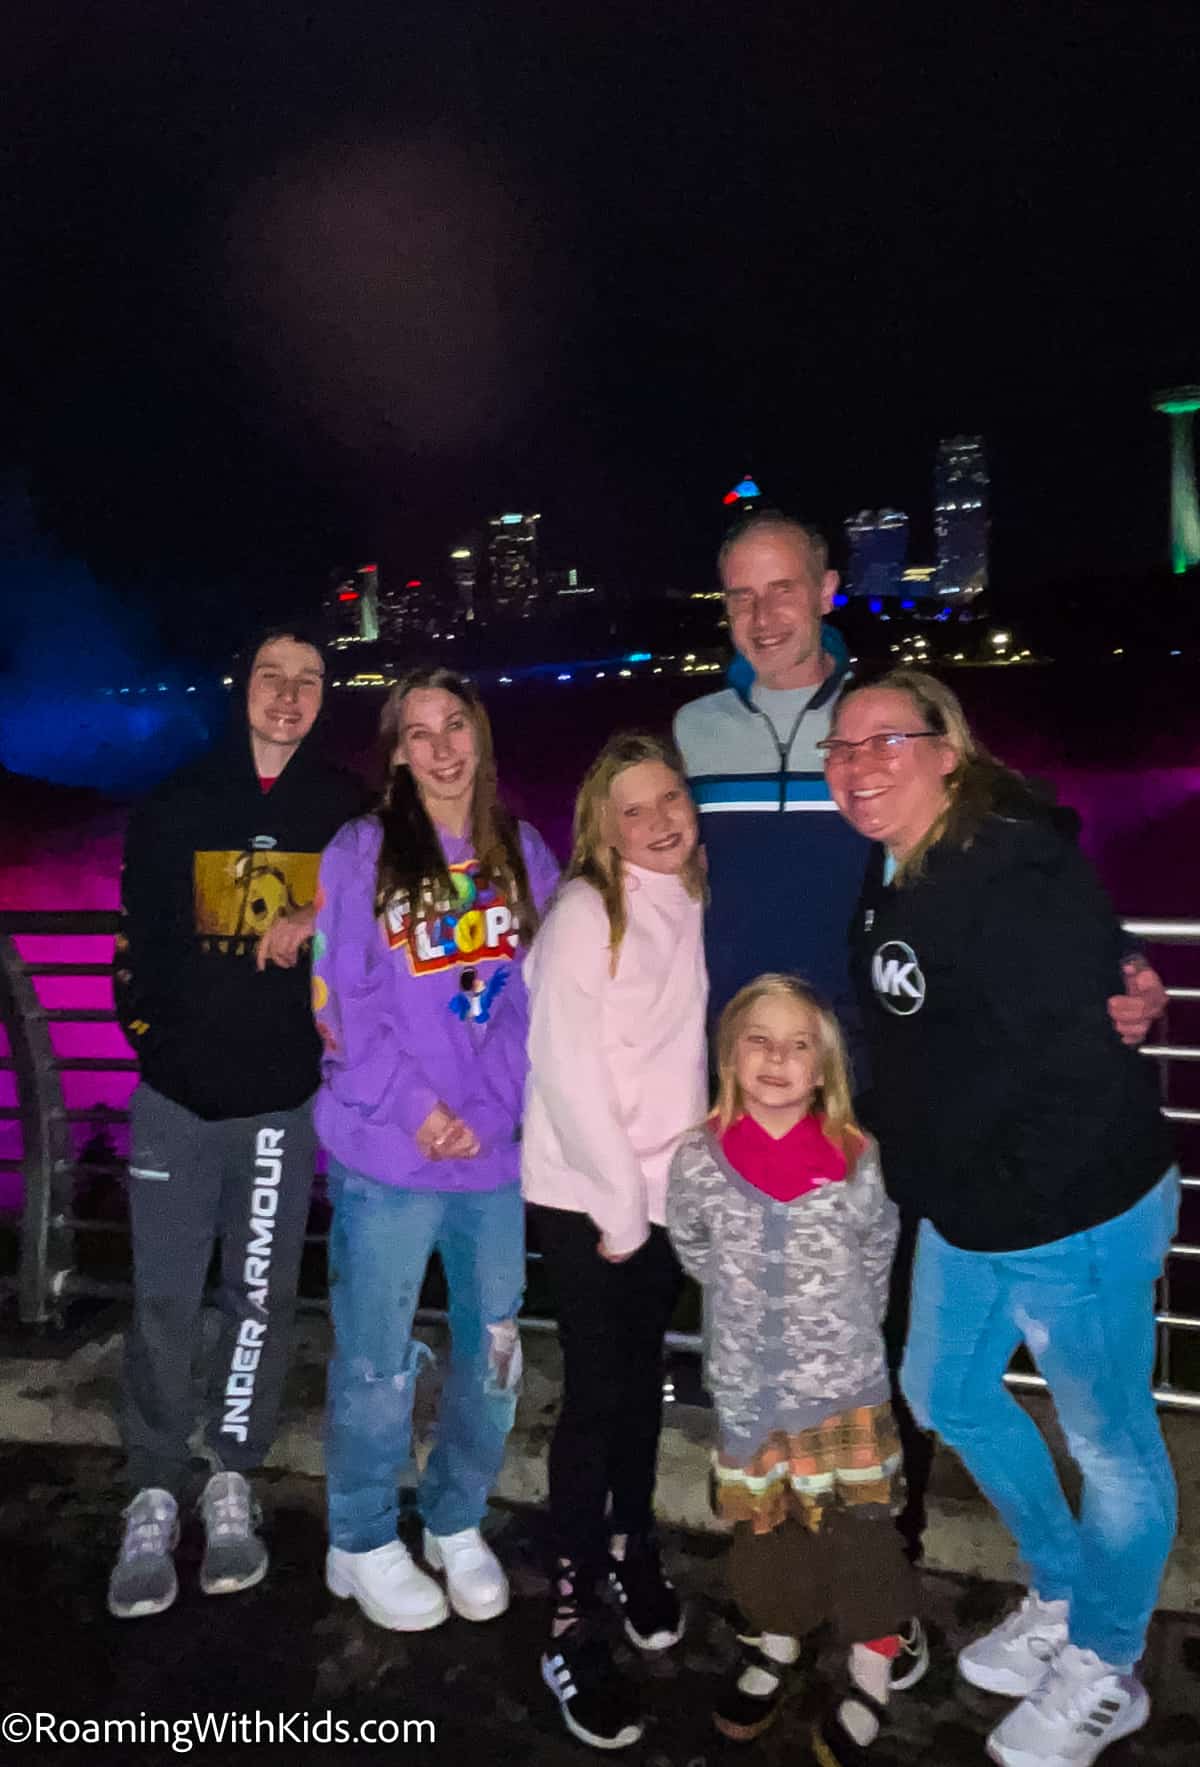 Visiting Niagara Falls with Kids